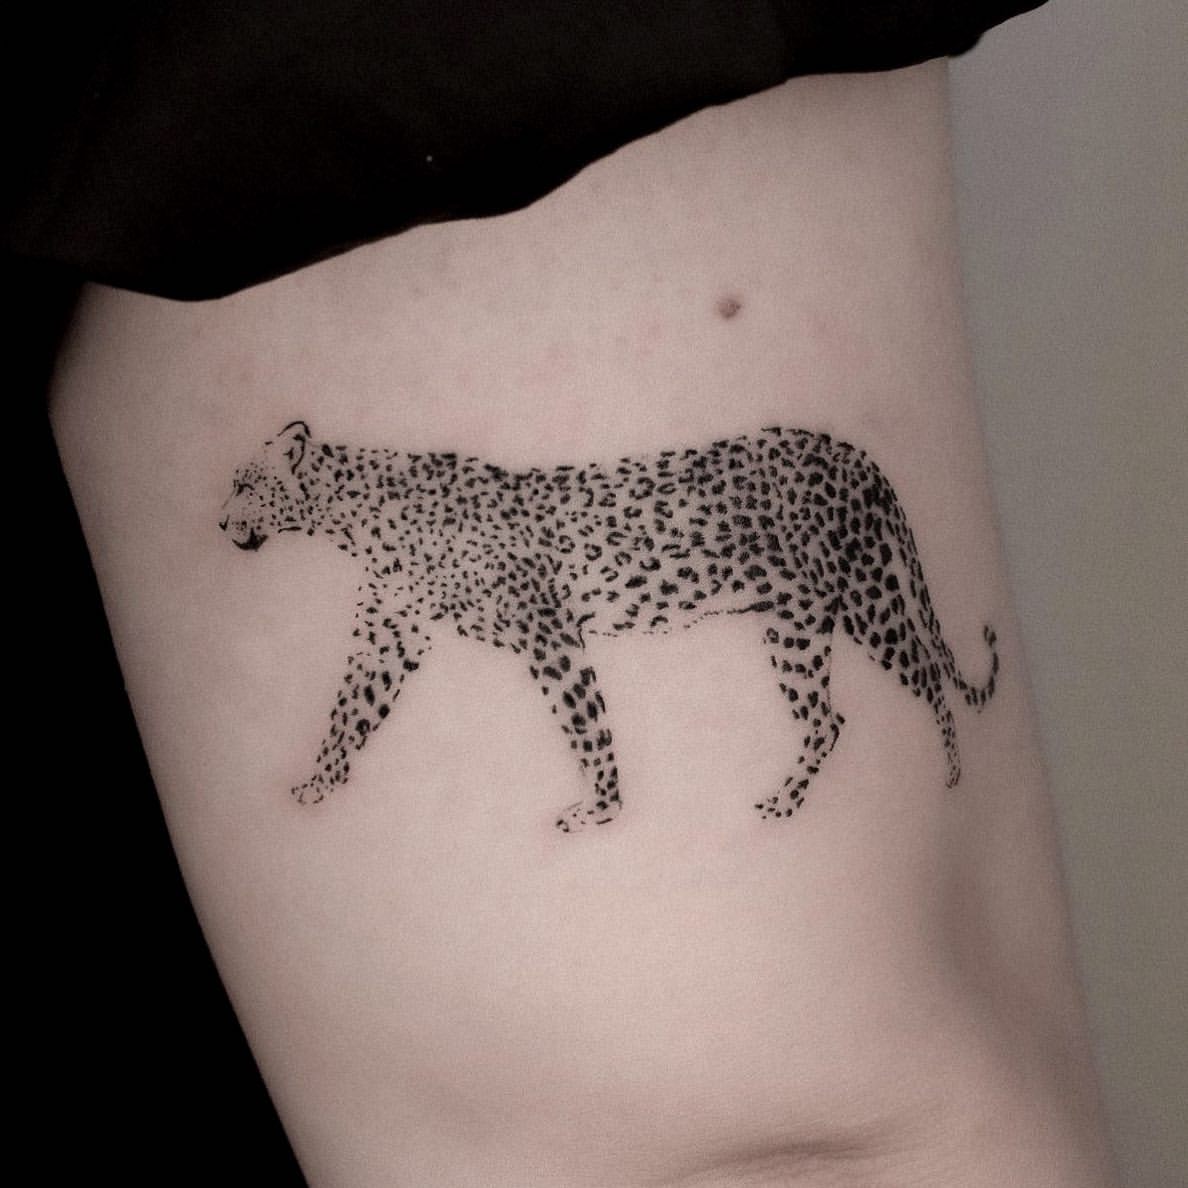 Leopard and Jaguar Tattoo Ideas 7